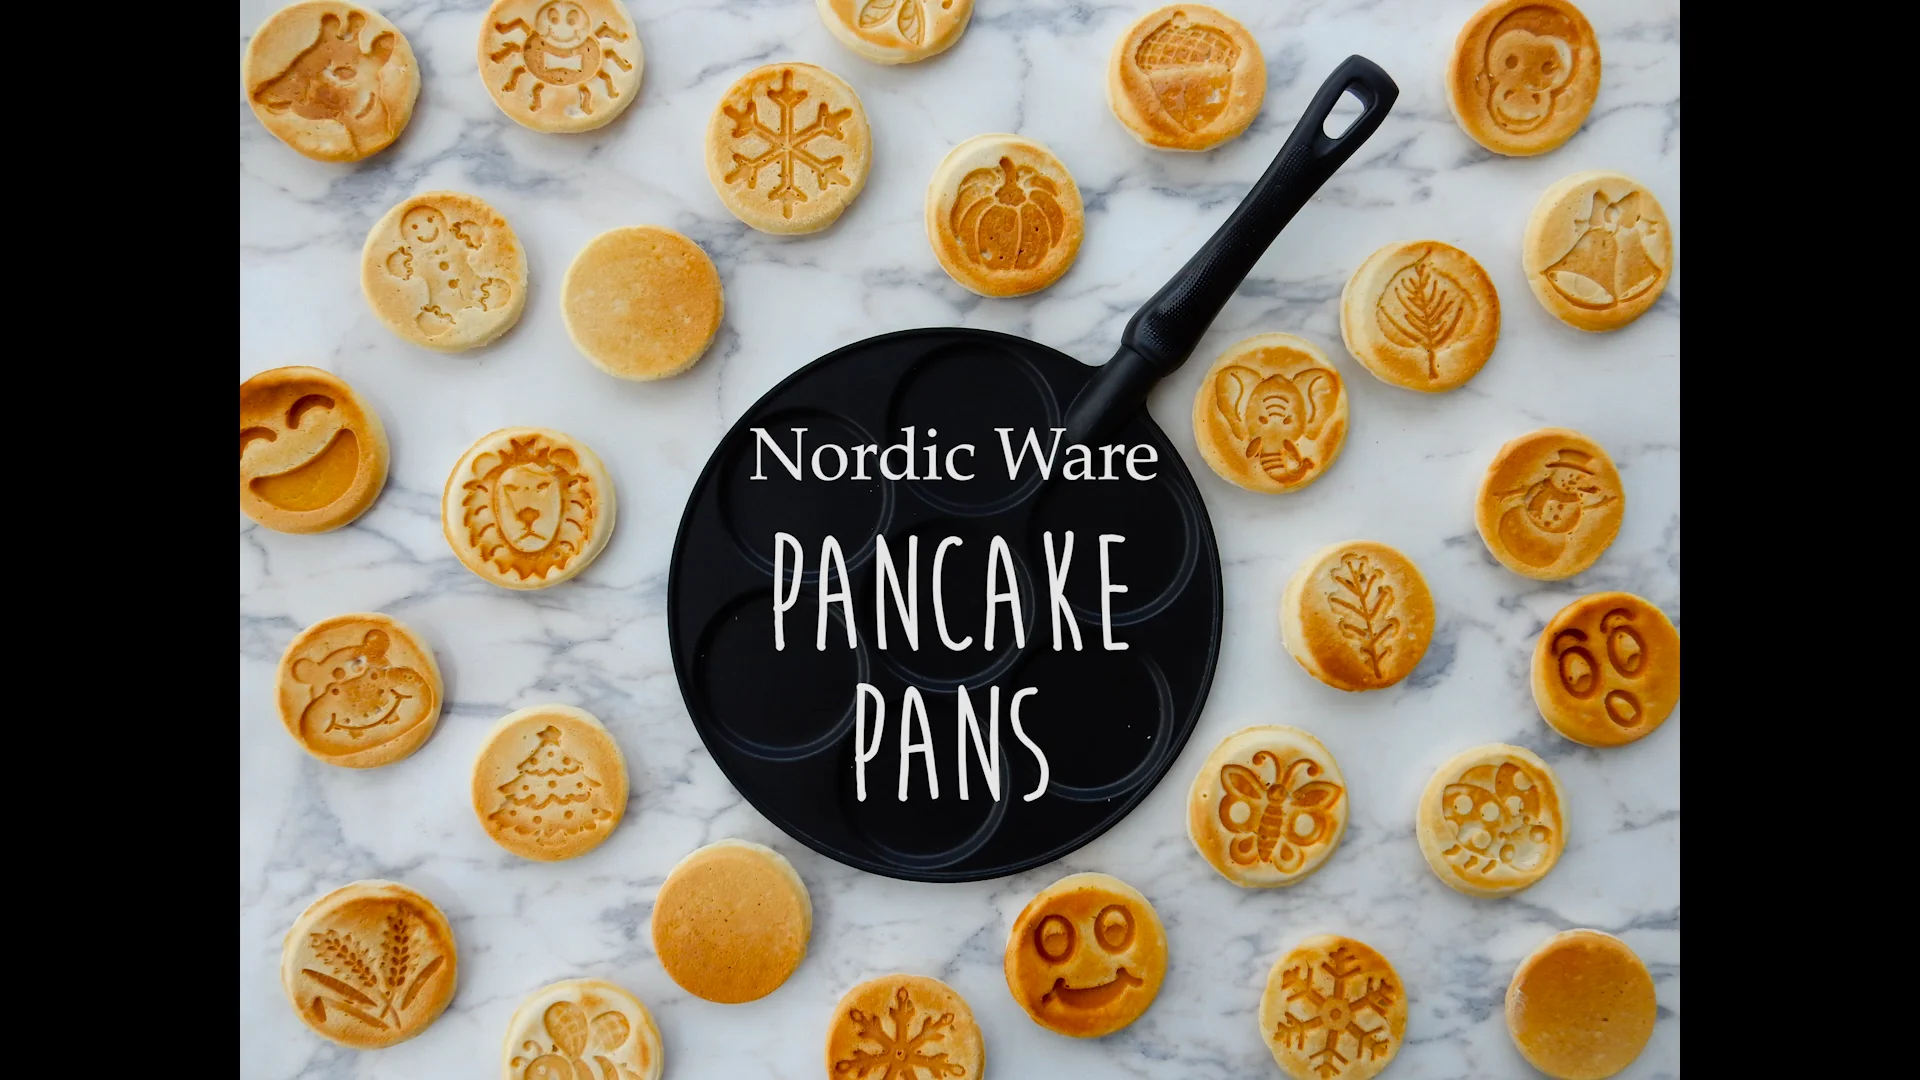 Nordic Ware Pancake Pans on Vimeo